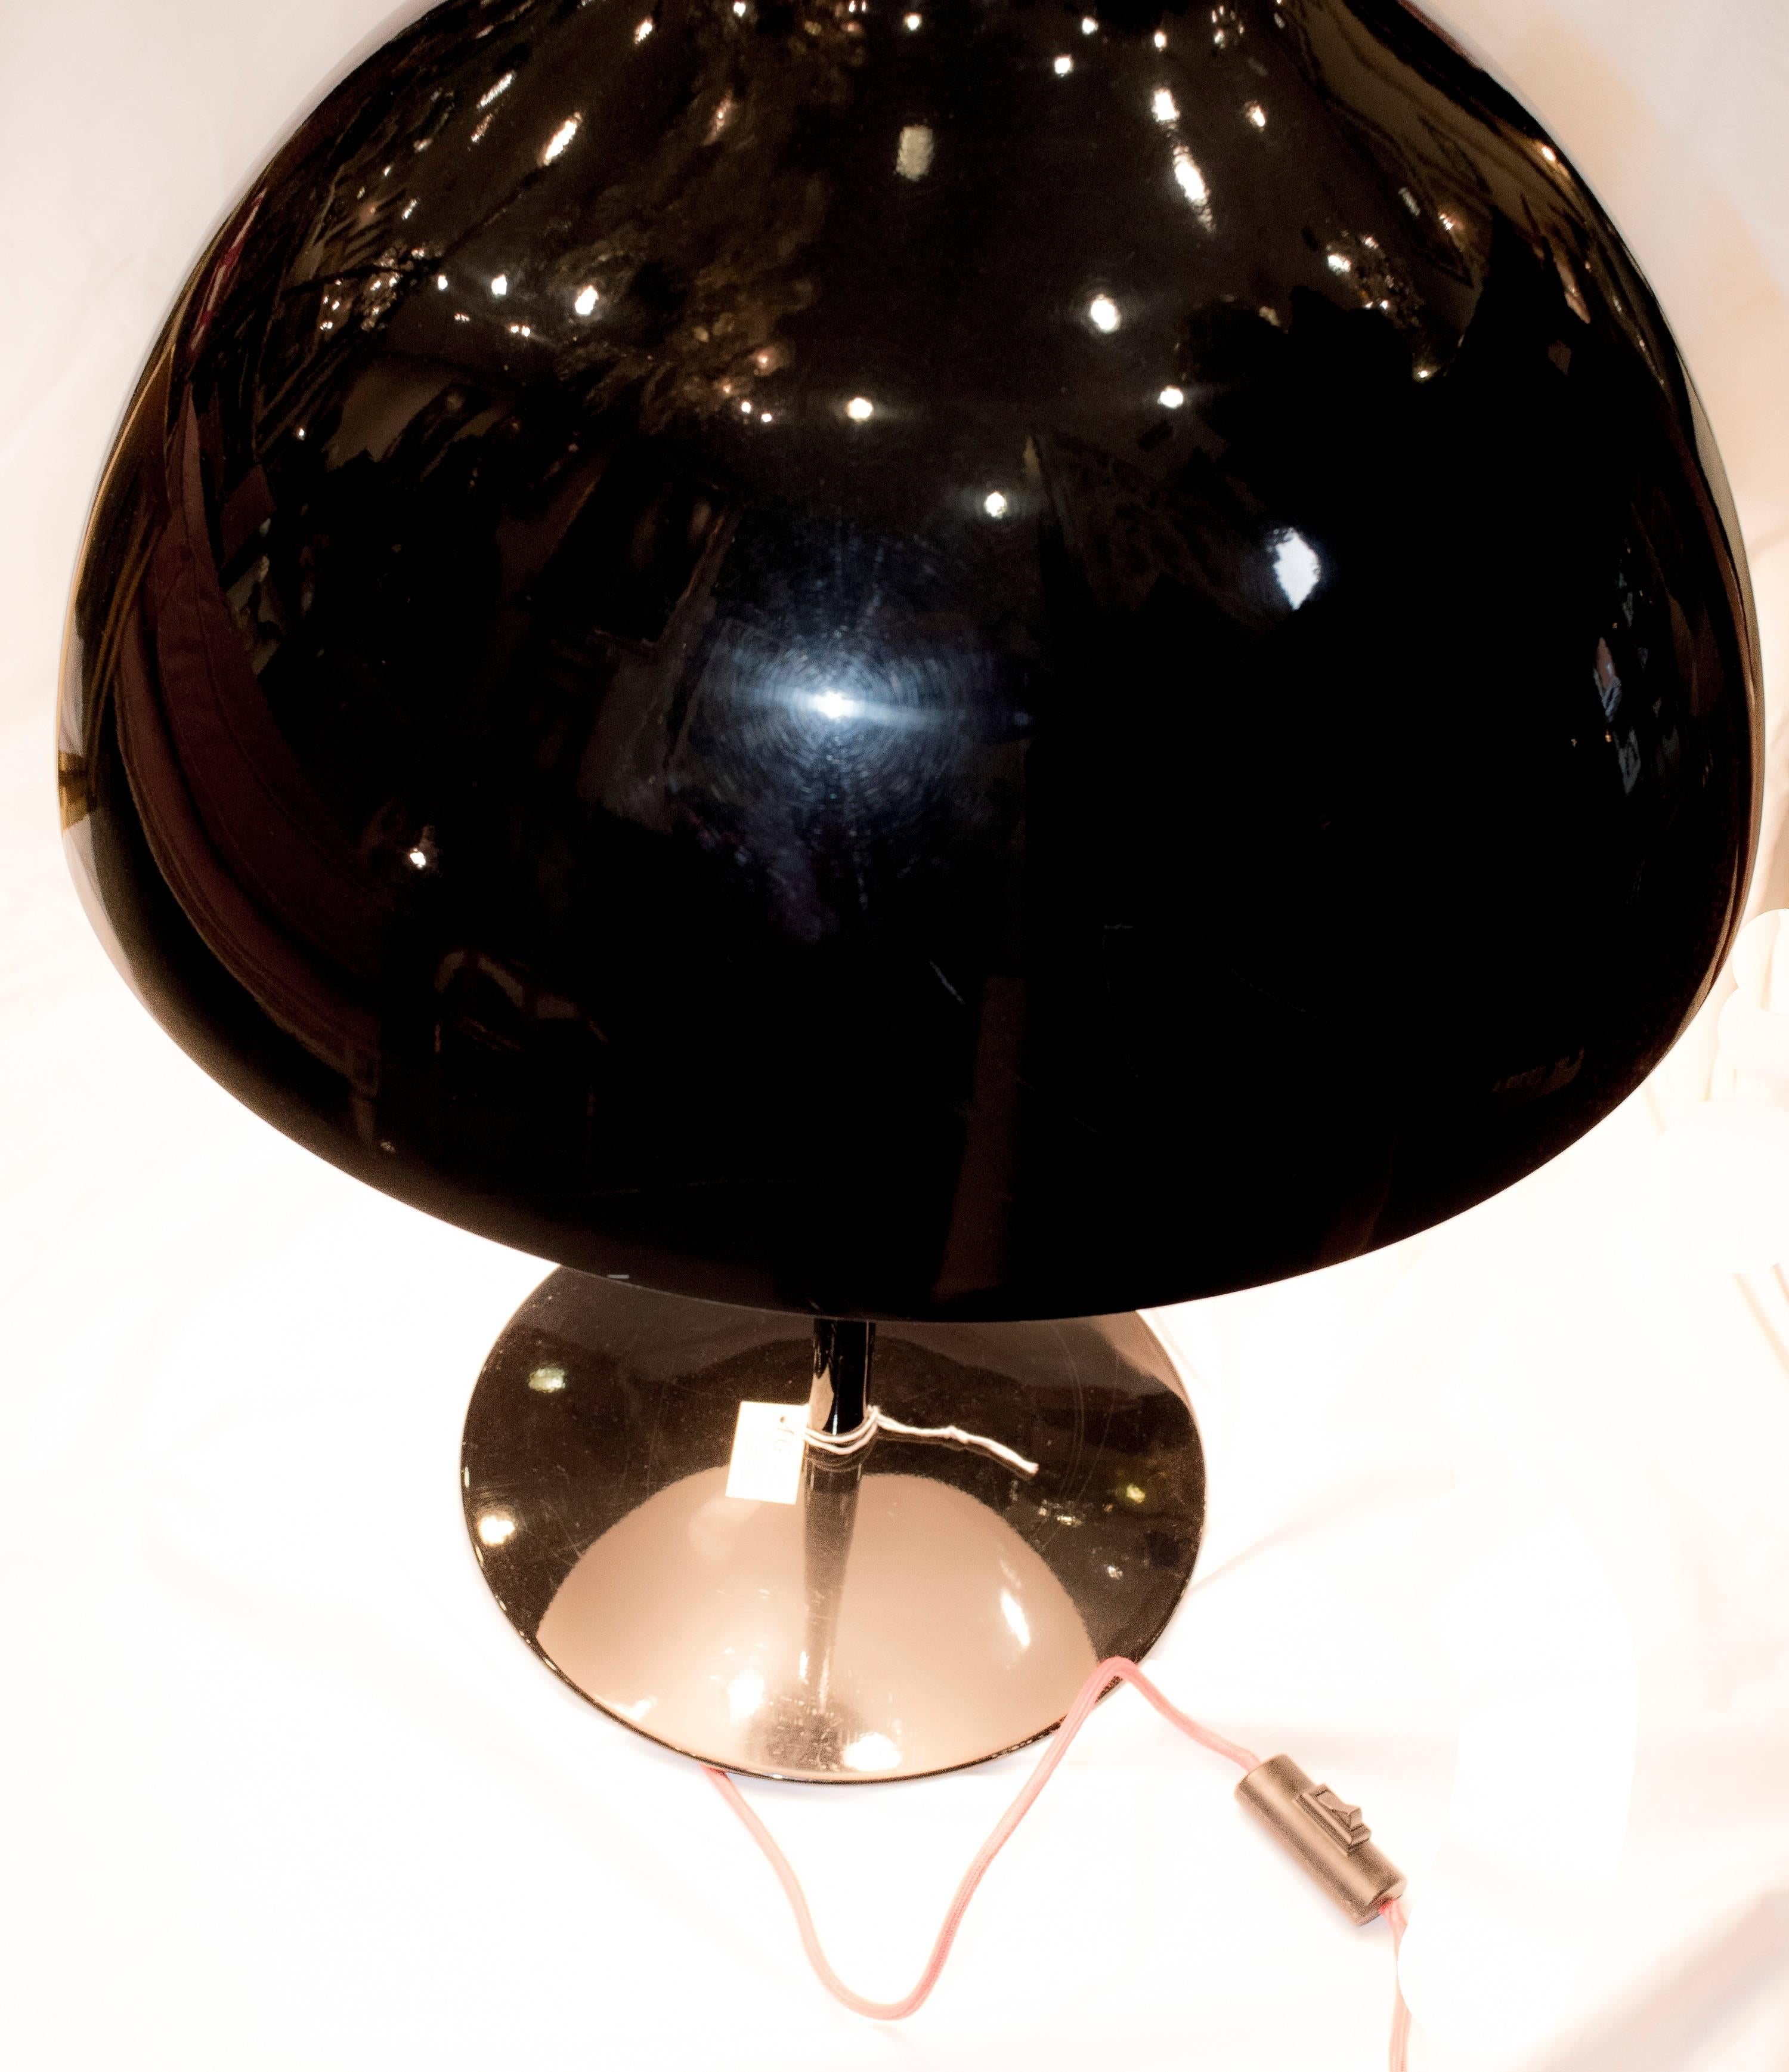 Tischlampe aus schwarzem Metall aus dem 20. Jahrhundert, um 1980. Wahrscheinlich ein italienisches Design. In einem sehr guten Zustand für den Gebrauch und das Alter.
Tischlampe aus schwarzem Metall aus dem 20. Jahrhundert, um 1980. Wahrscheinlich